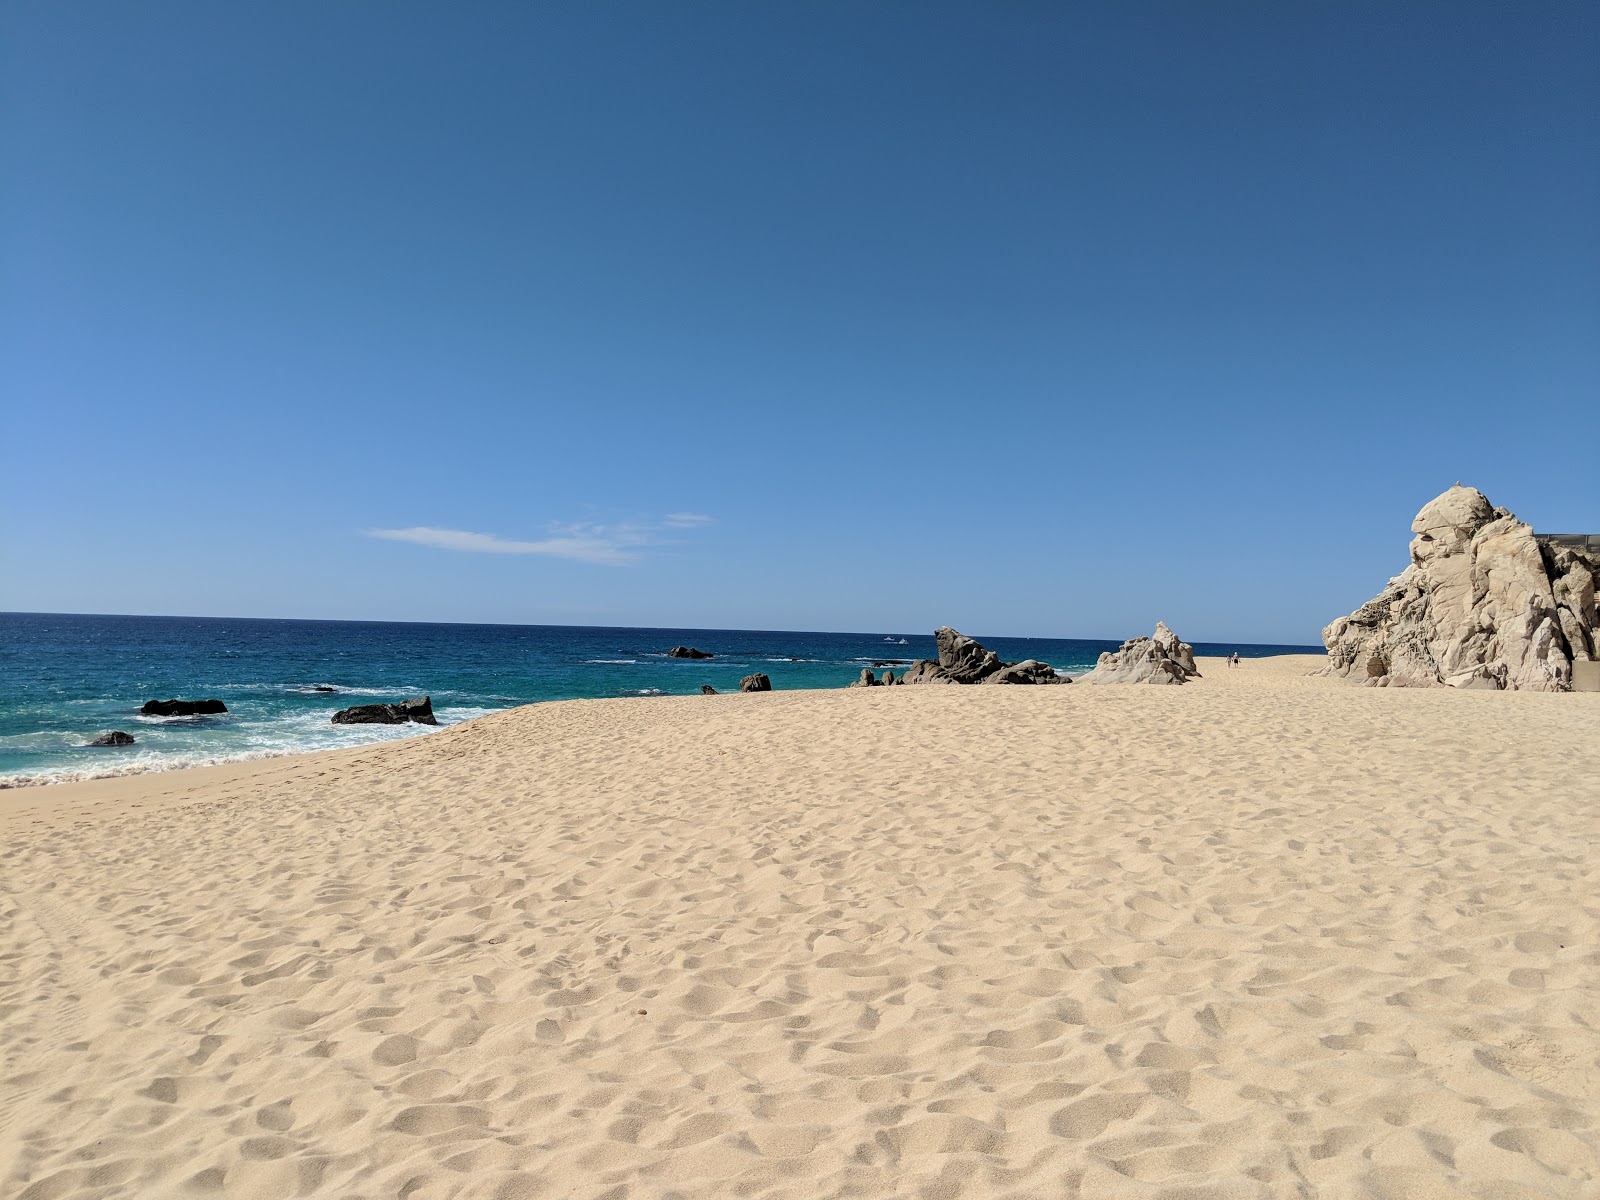 Foto de Pedregal Playa - lugar popular entre los conocedores del relax